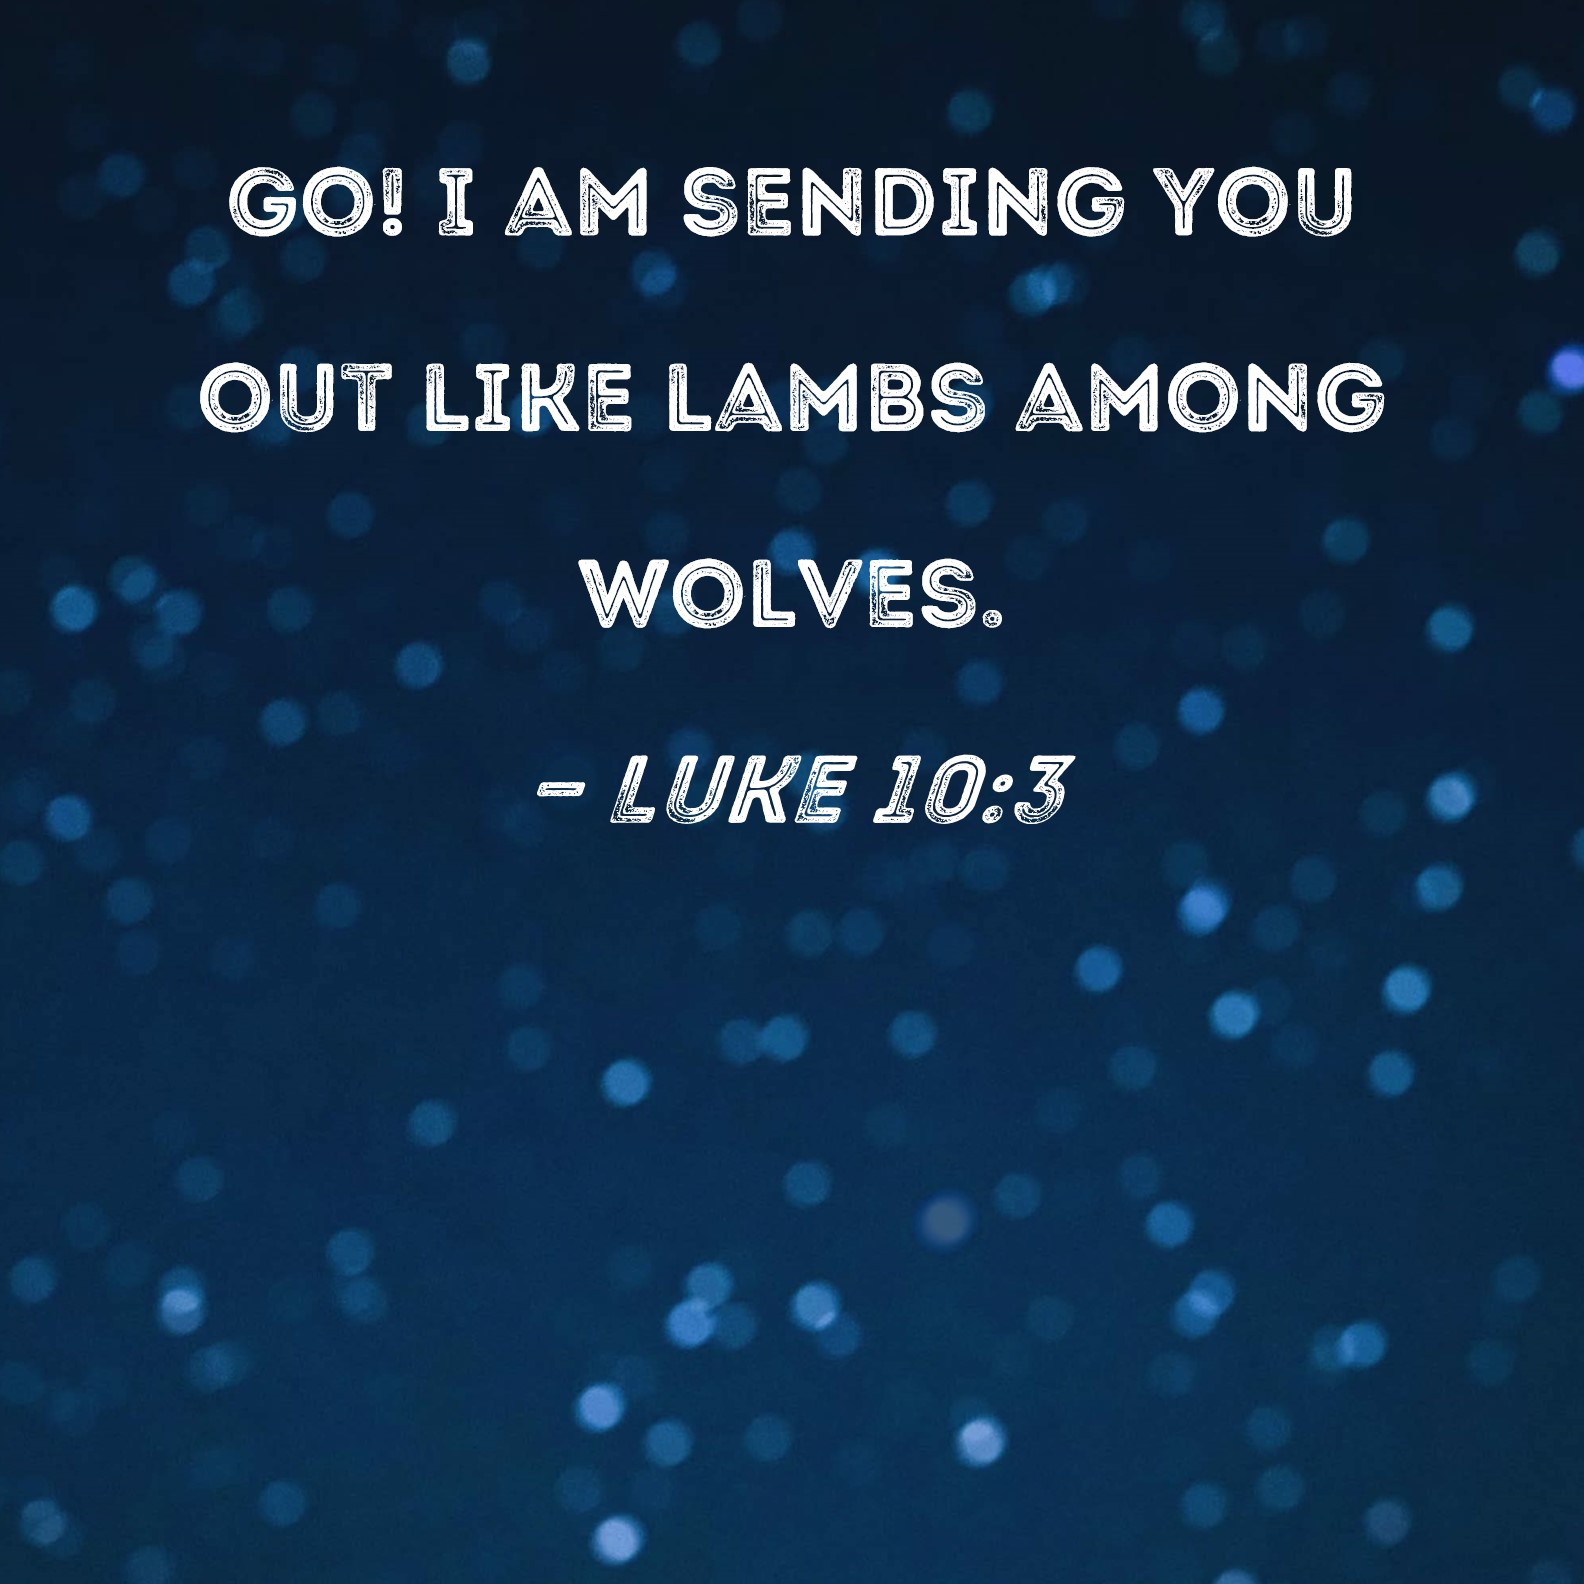 Luke 10:3 Go! I am sending you out like lambs among wolves.